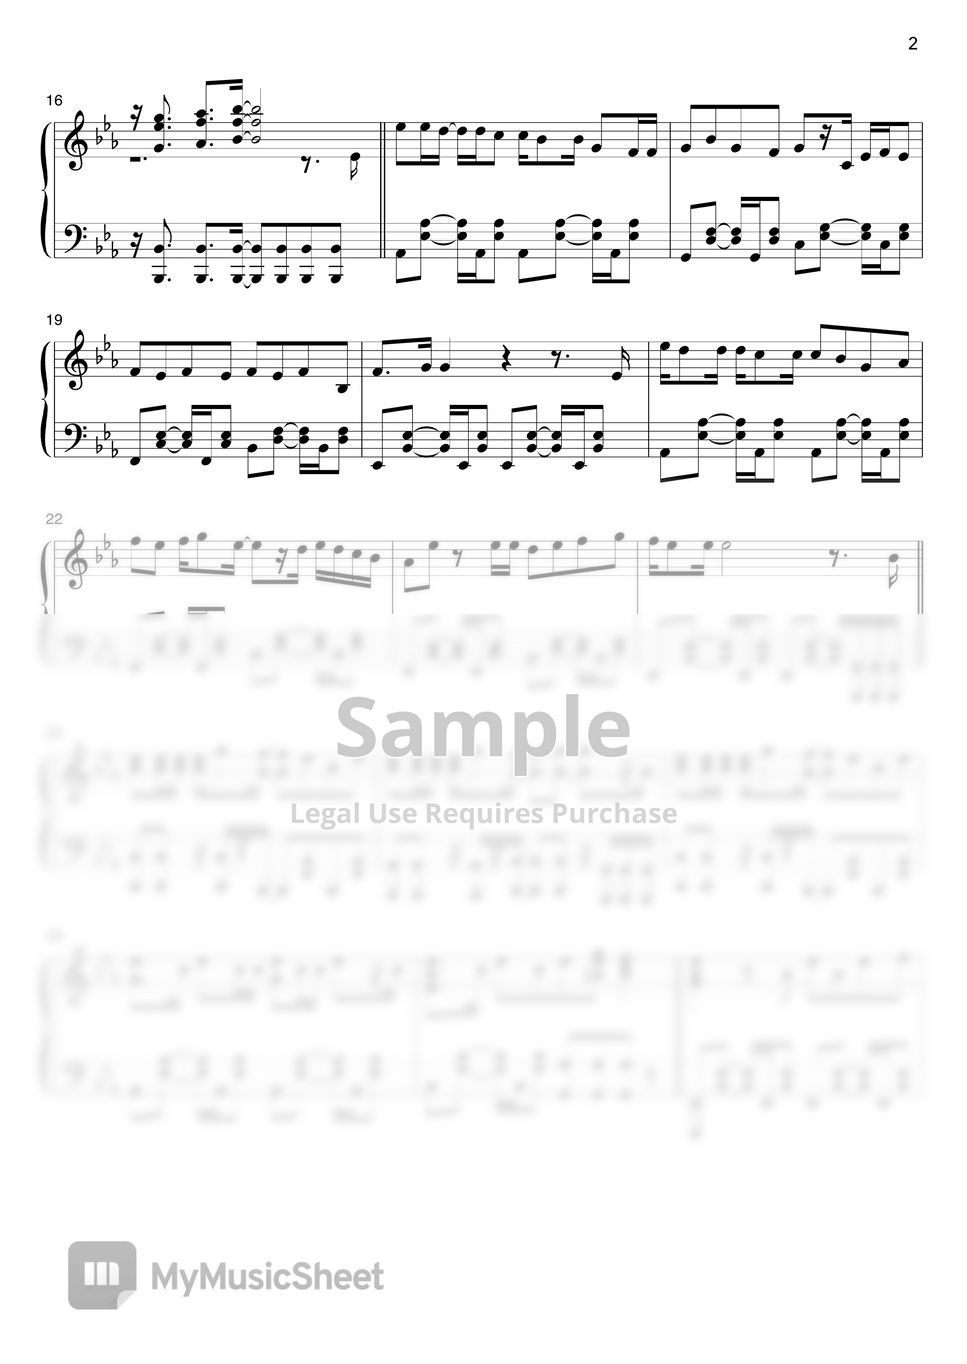 Sumika - Fanfare by THETA PIANO